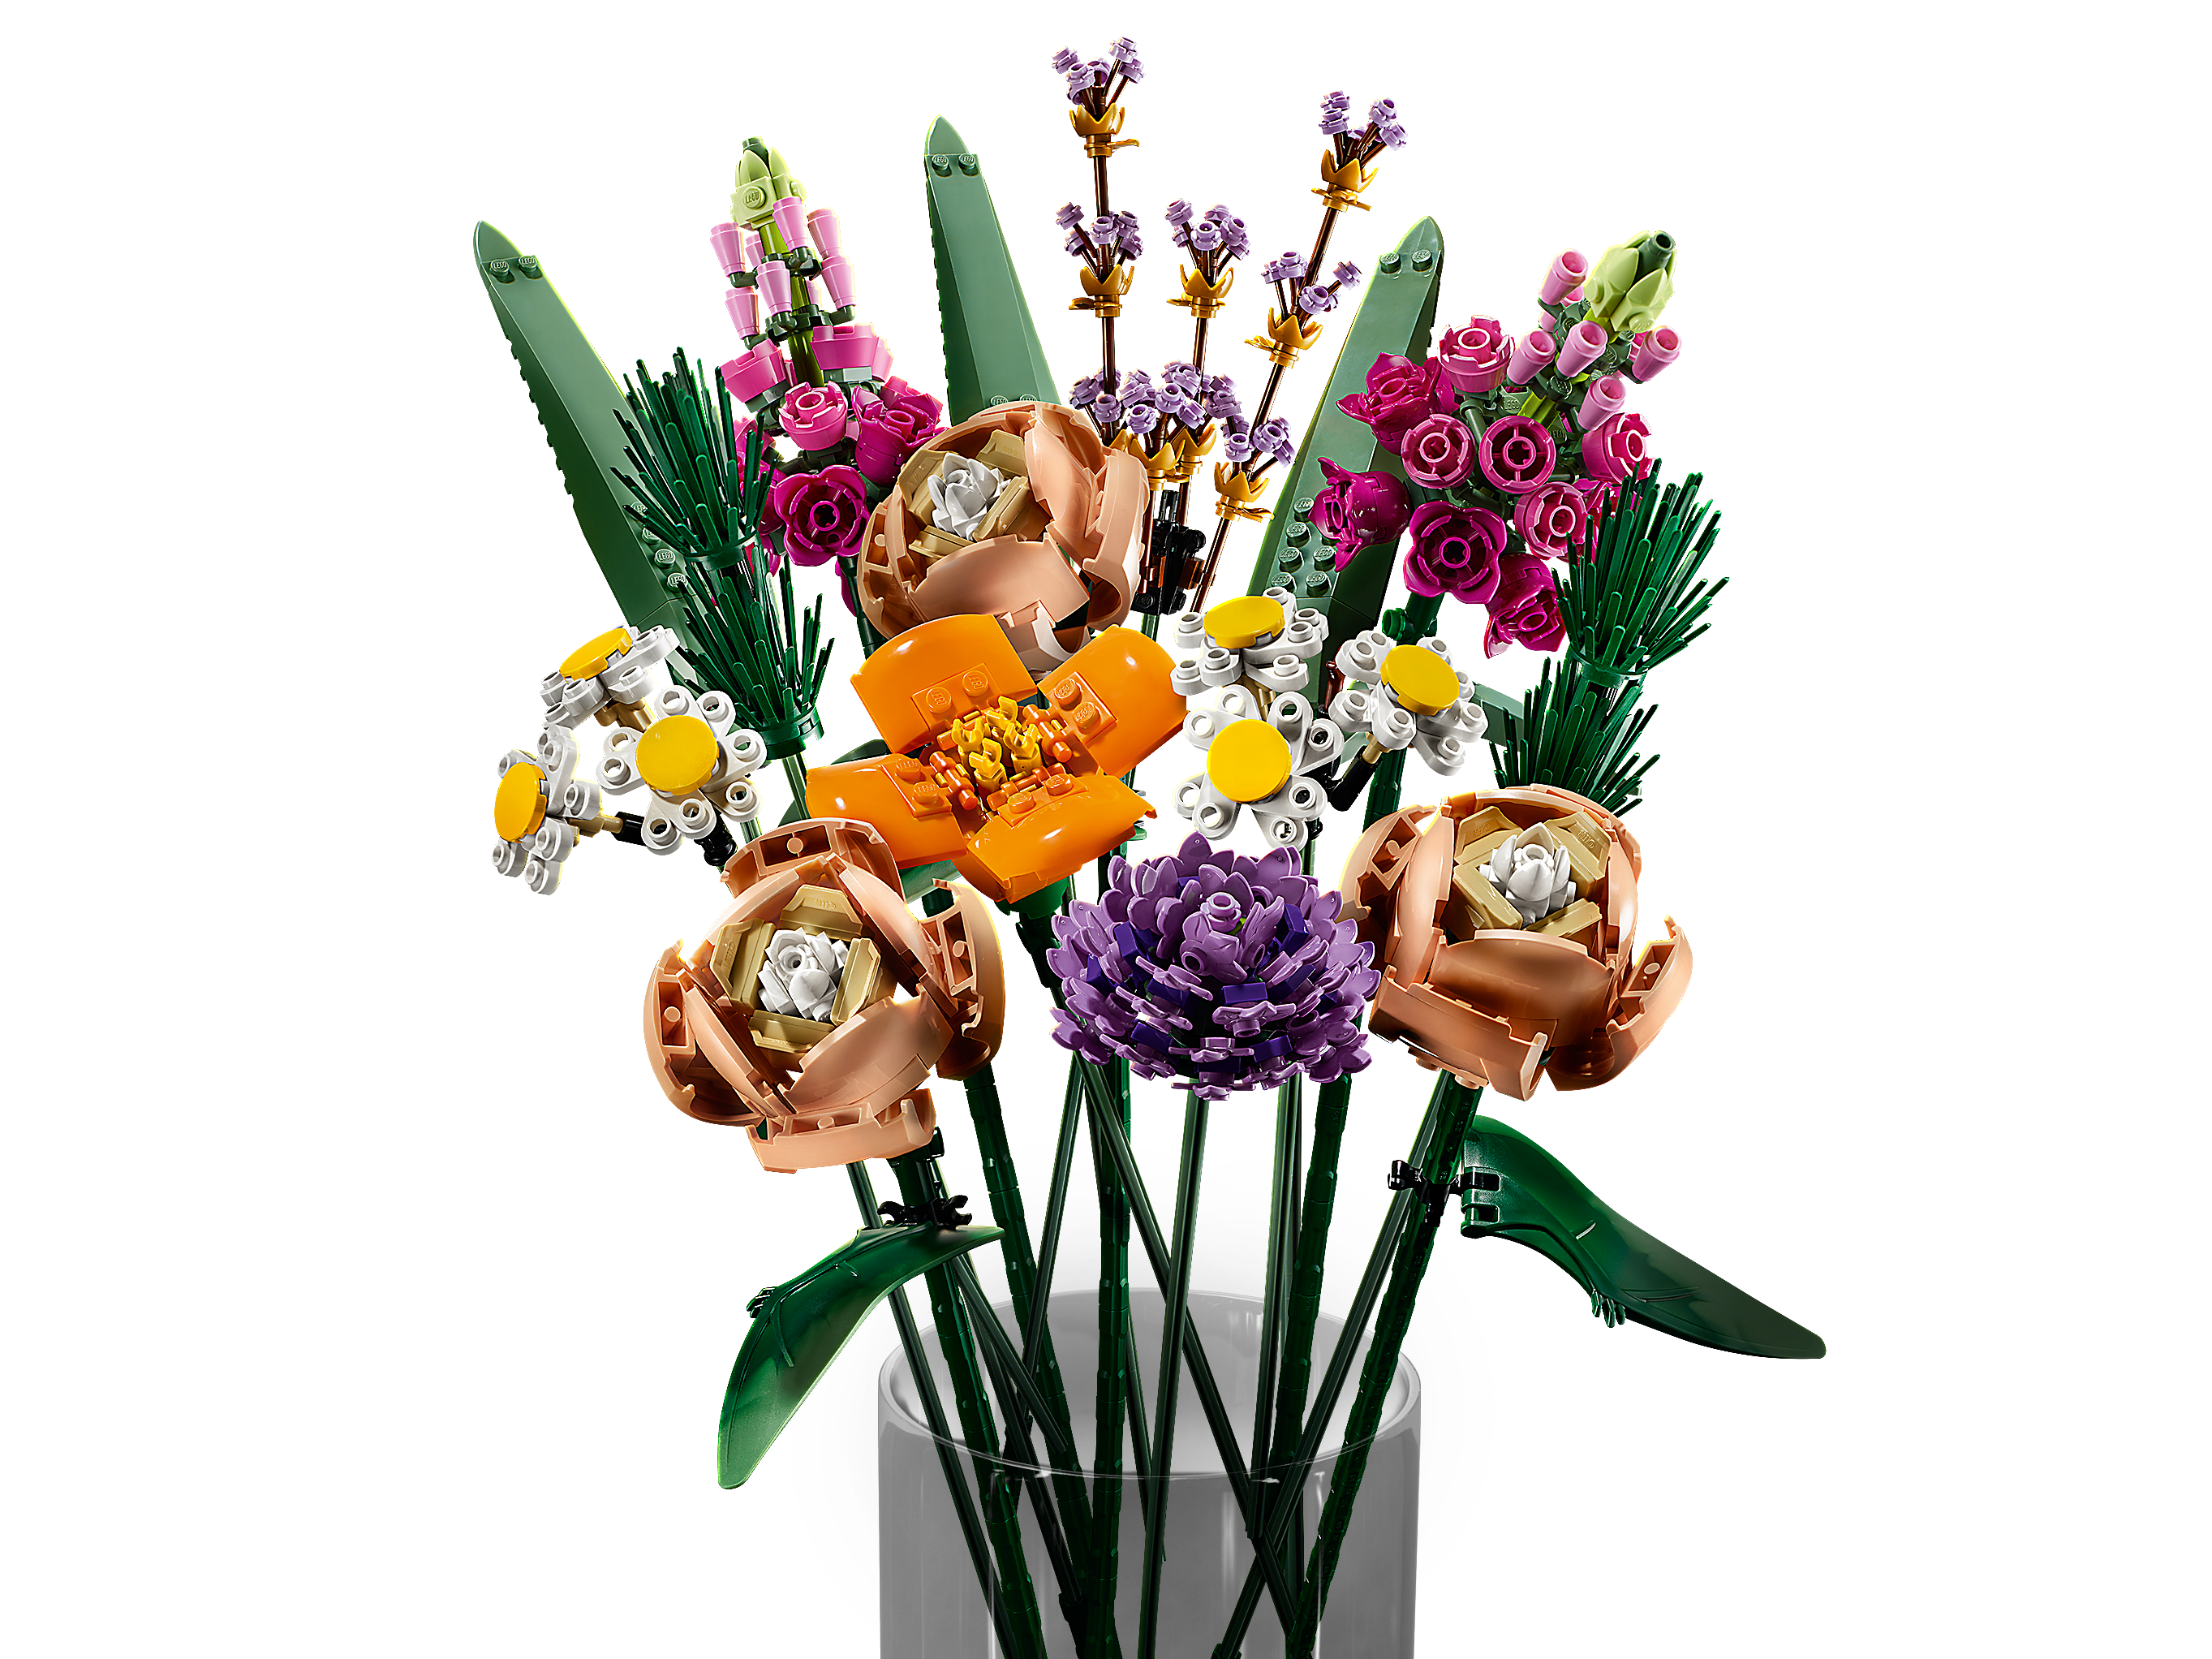 Vase Pour Lego 10280 Creator Expert Bouquet Fleur Bouquet Lego